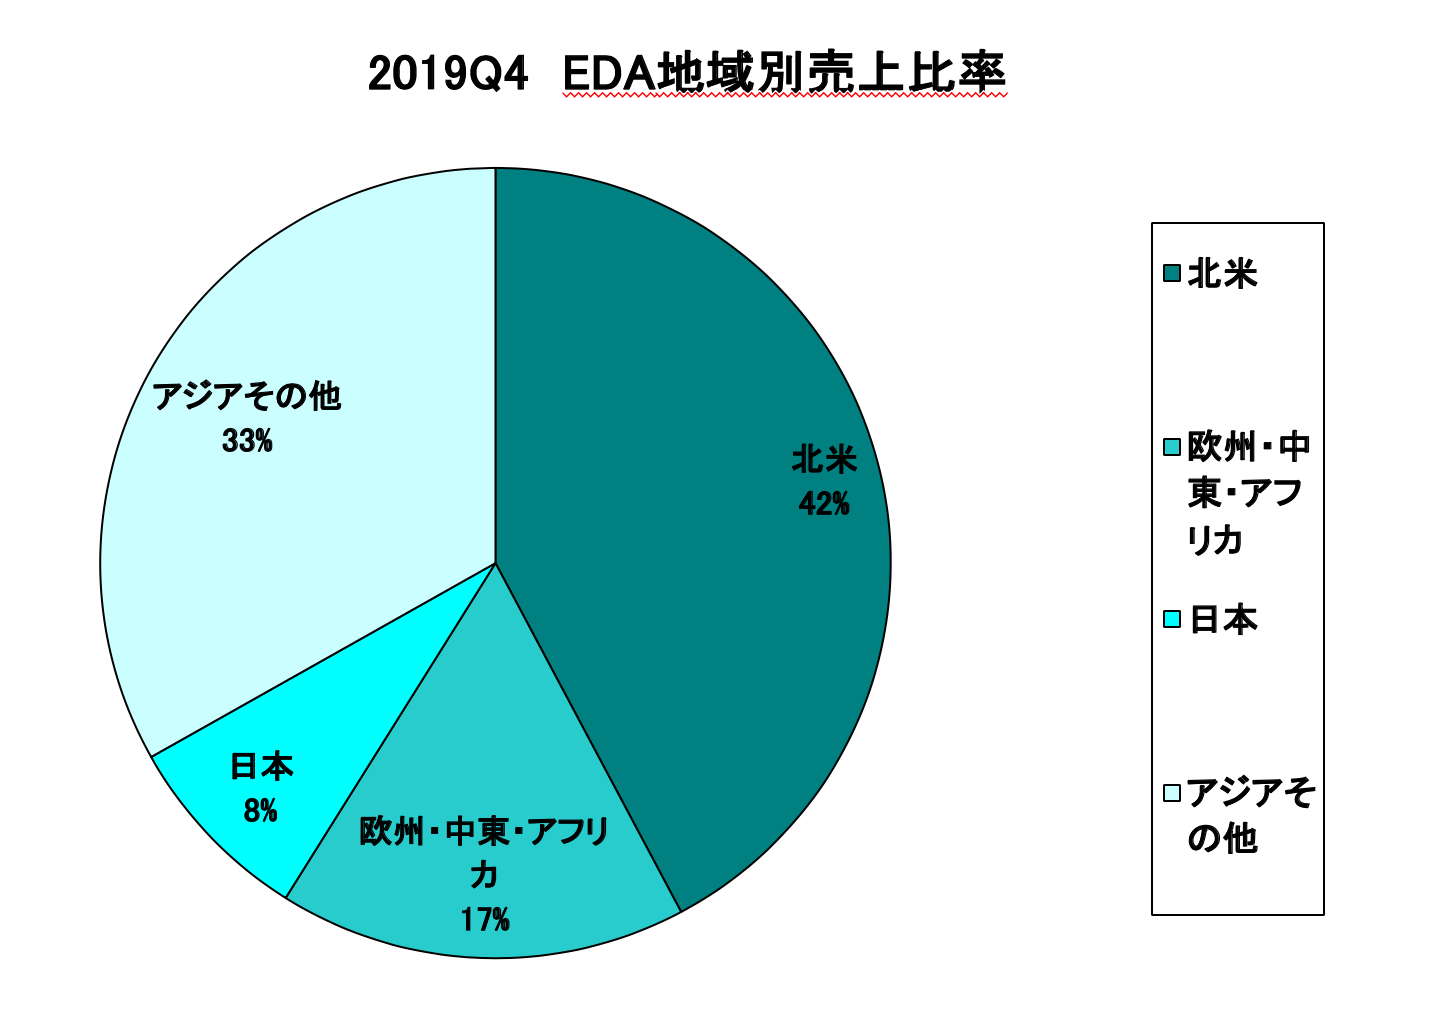 https://www.eda-express.com/%E3%82%B9%E3%82%AF%E3%83%AA%E3%83%BC%E3%83%B3%E3%82%B7%E3%83%A7%E3%83%83%E3%83%88%202020-03-26%209.40.32.png